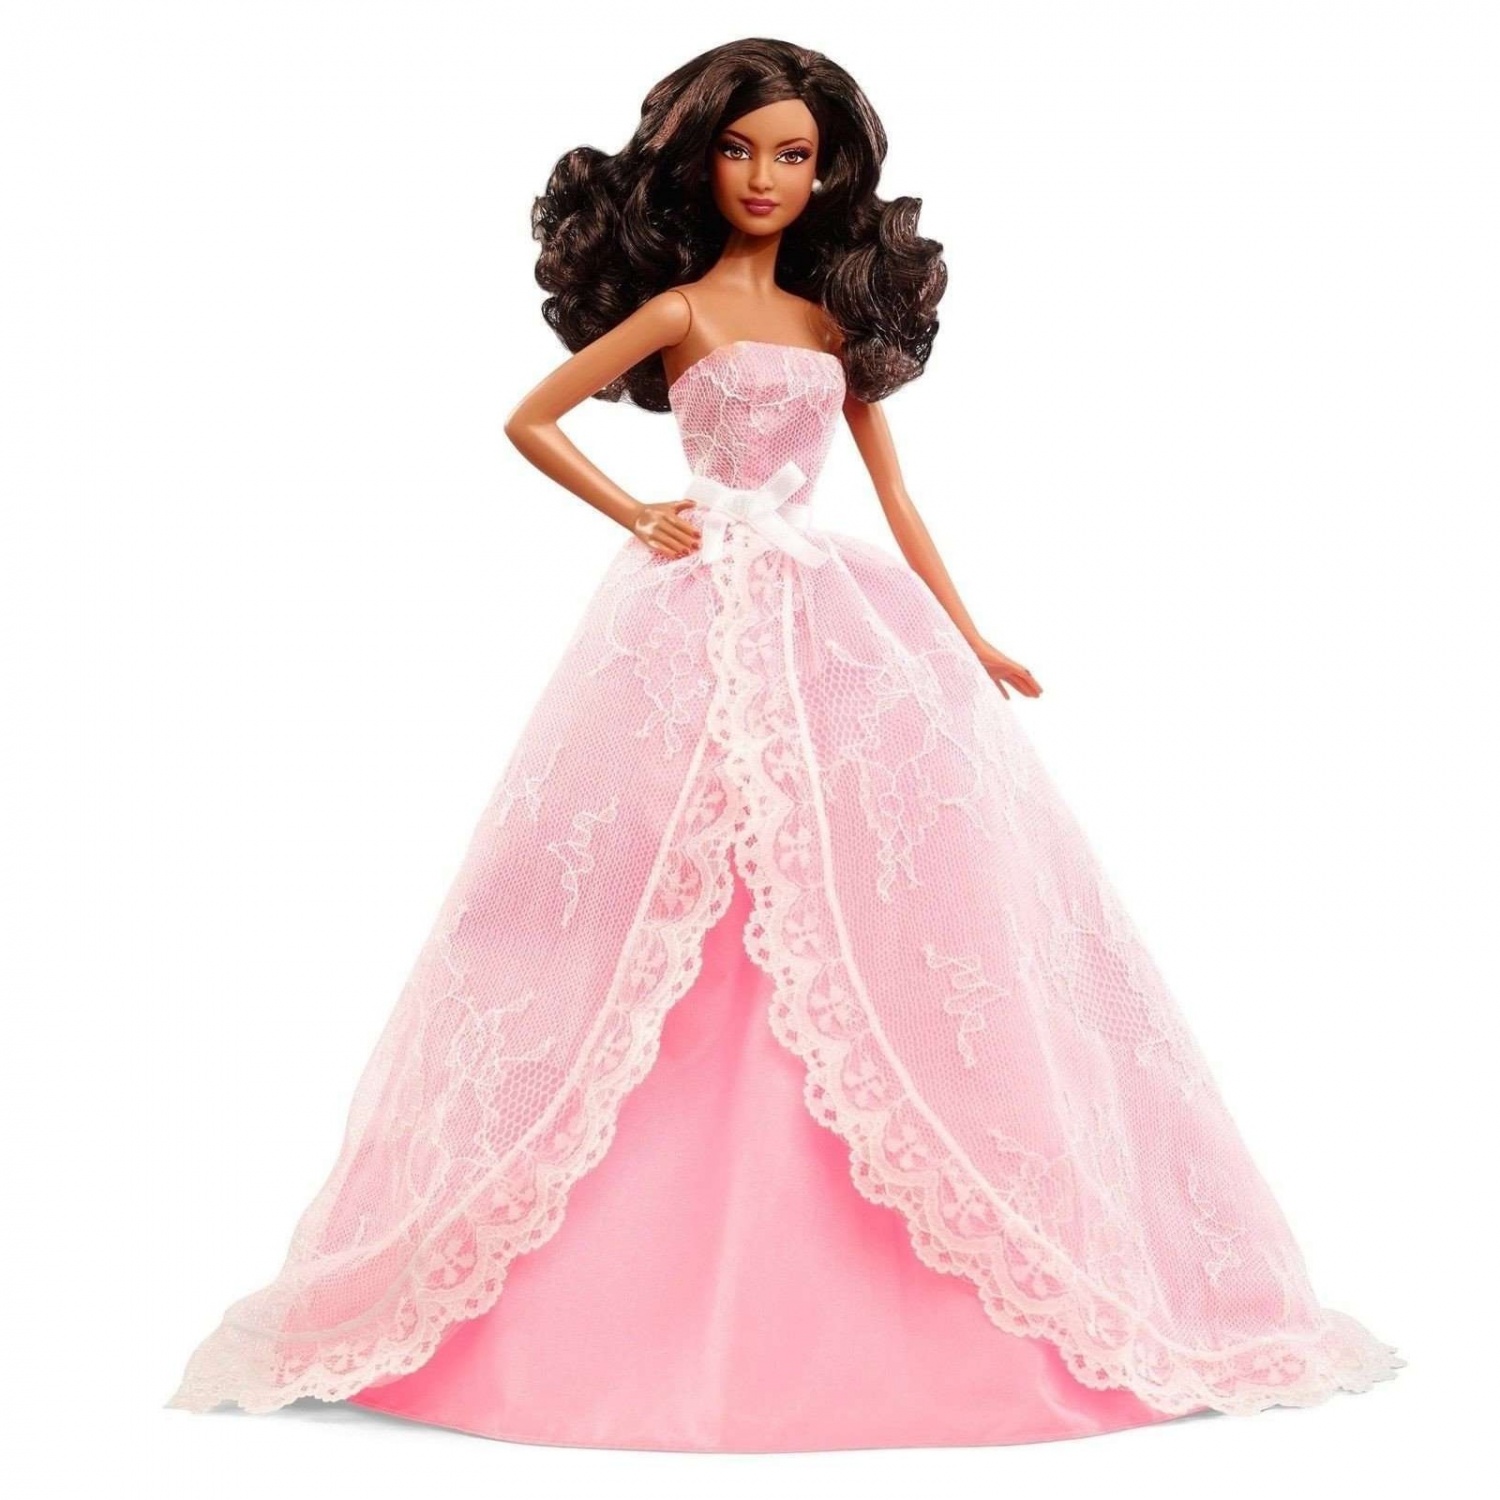 Barbie Birthday Wishes 2015